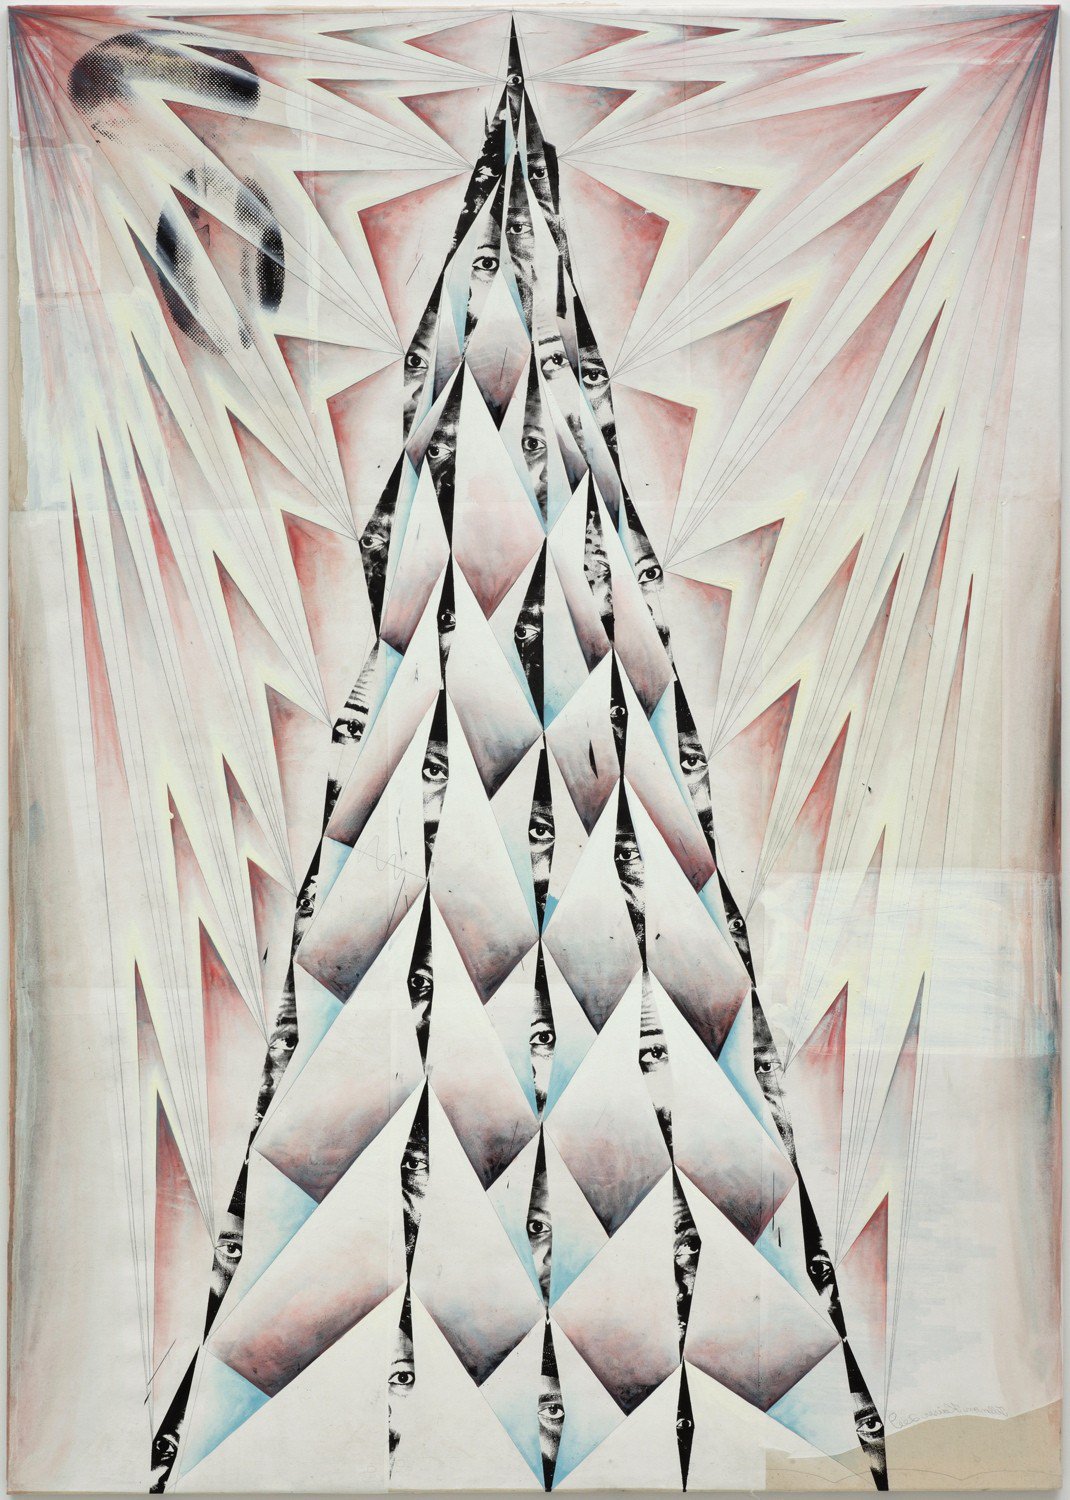 Tillman KaiserThe Summit, 2009Tempera, silkscreen on canvas190 x 135 cm